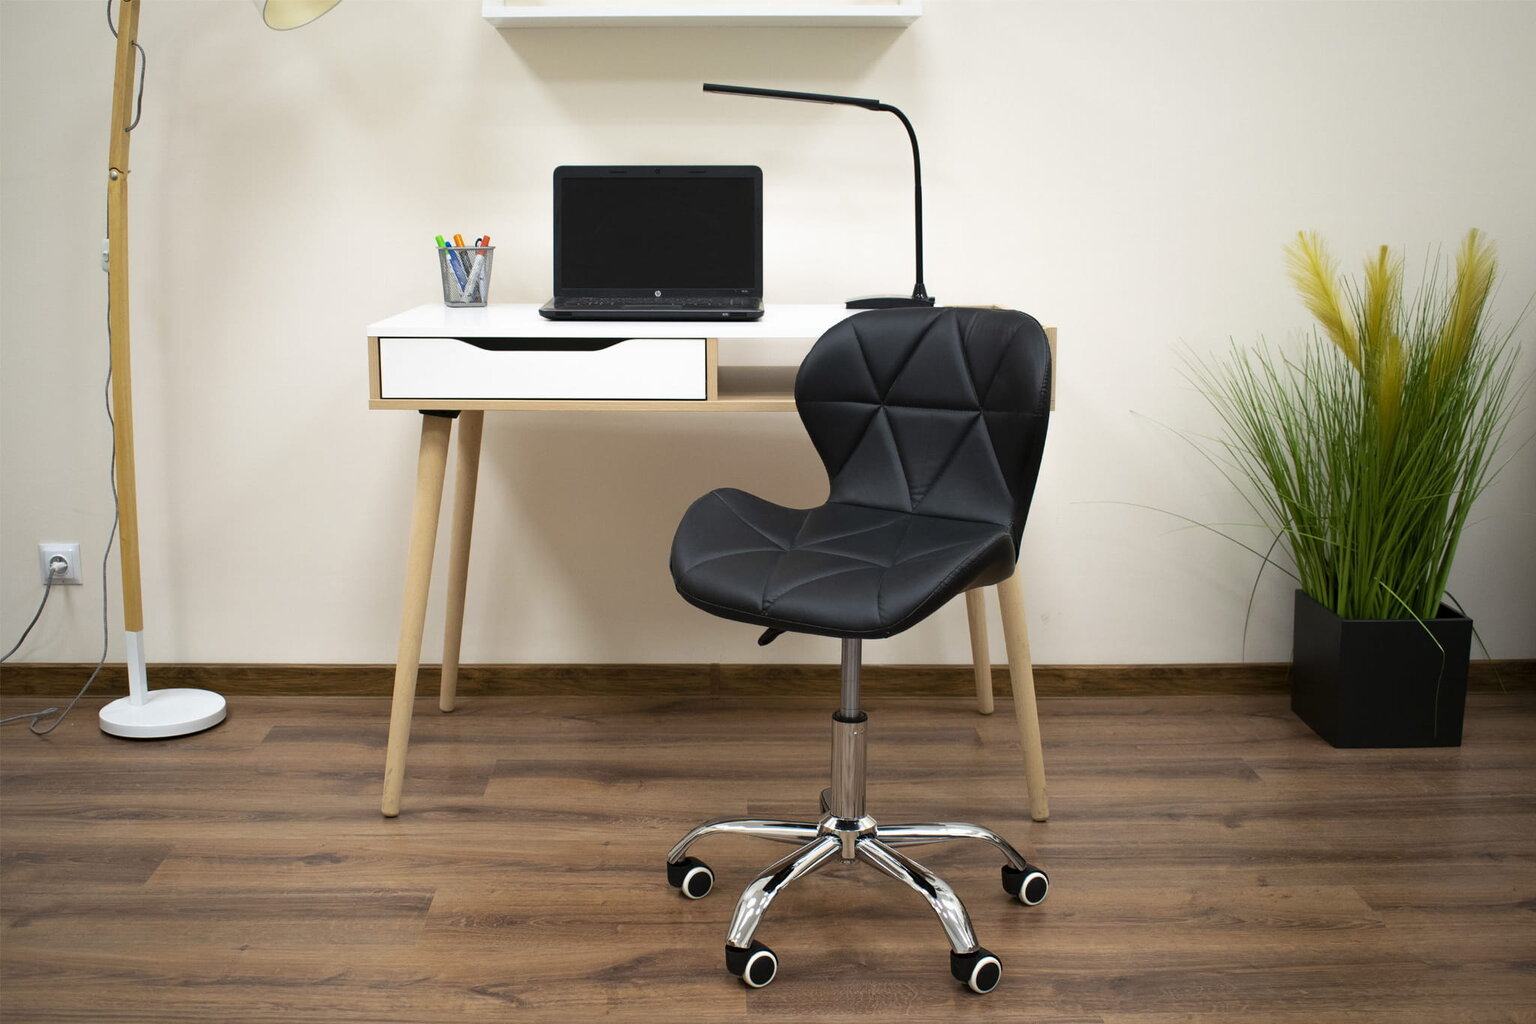 Biuro darbo kėdė AVOLA, juoda kaina ir informacija | Biuro kėdės | pigu.lt